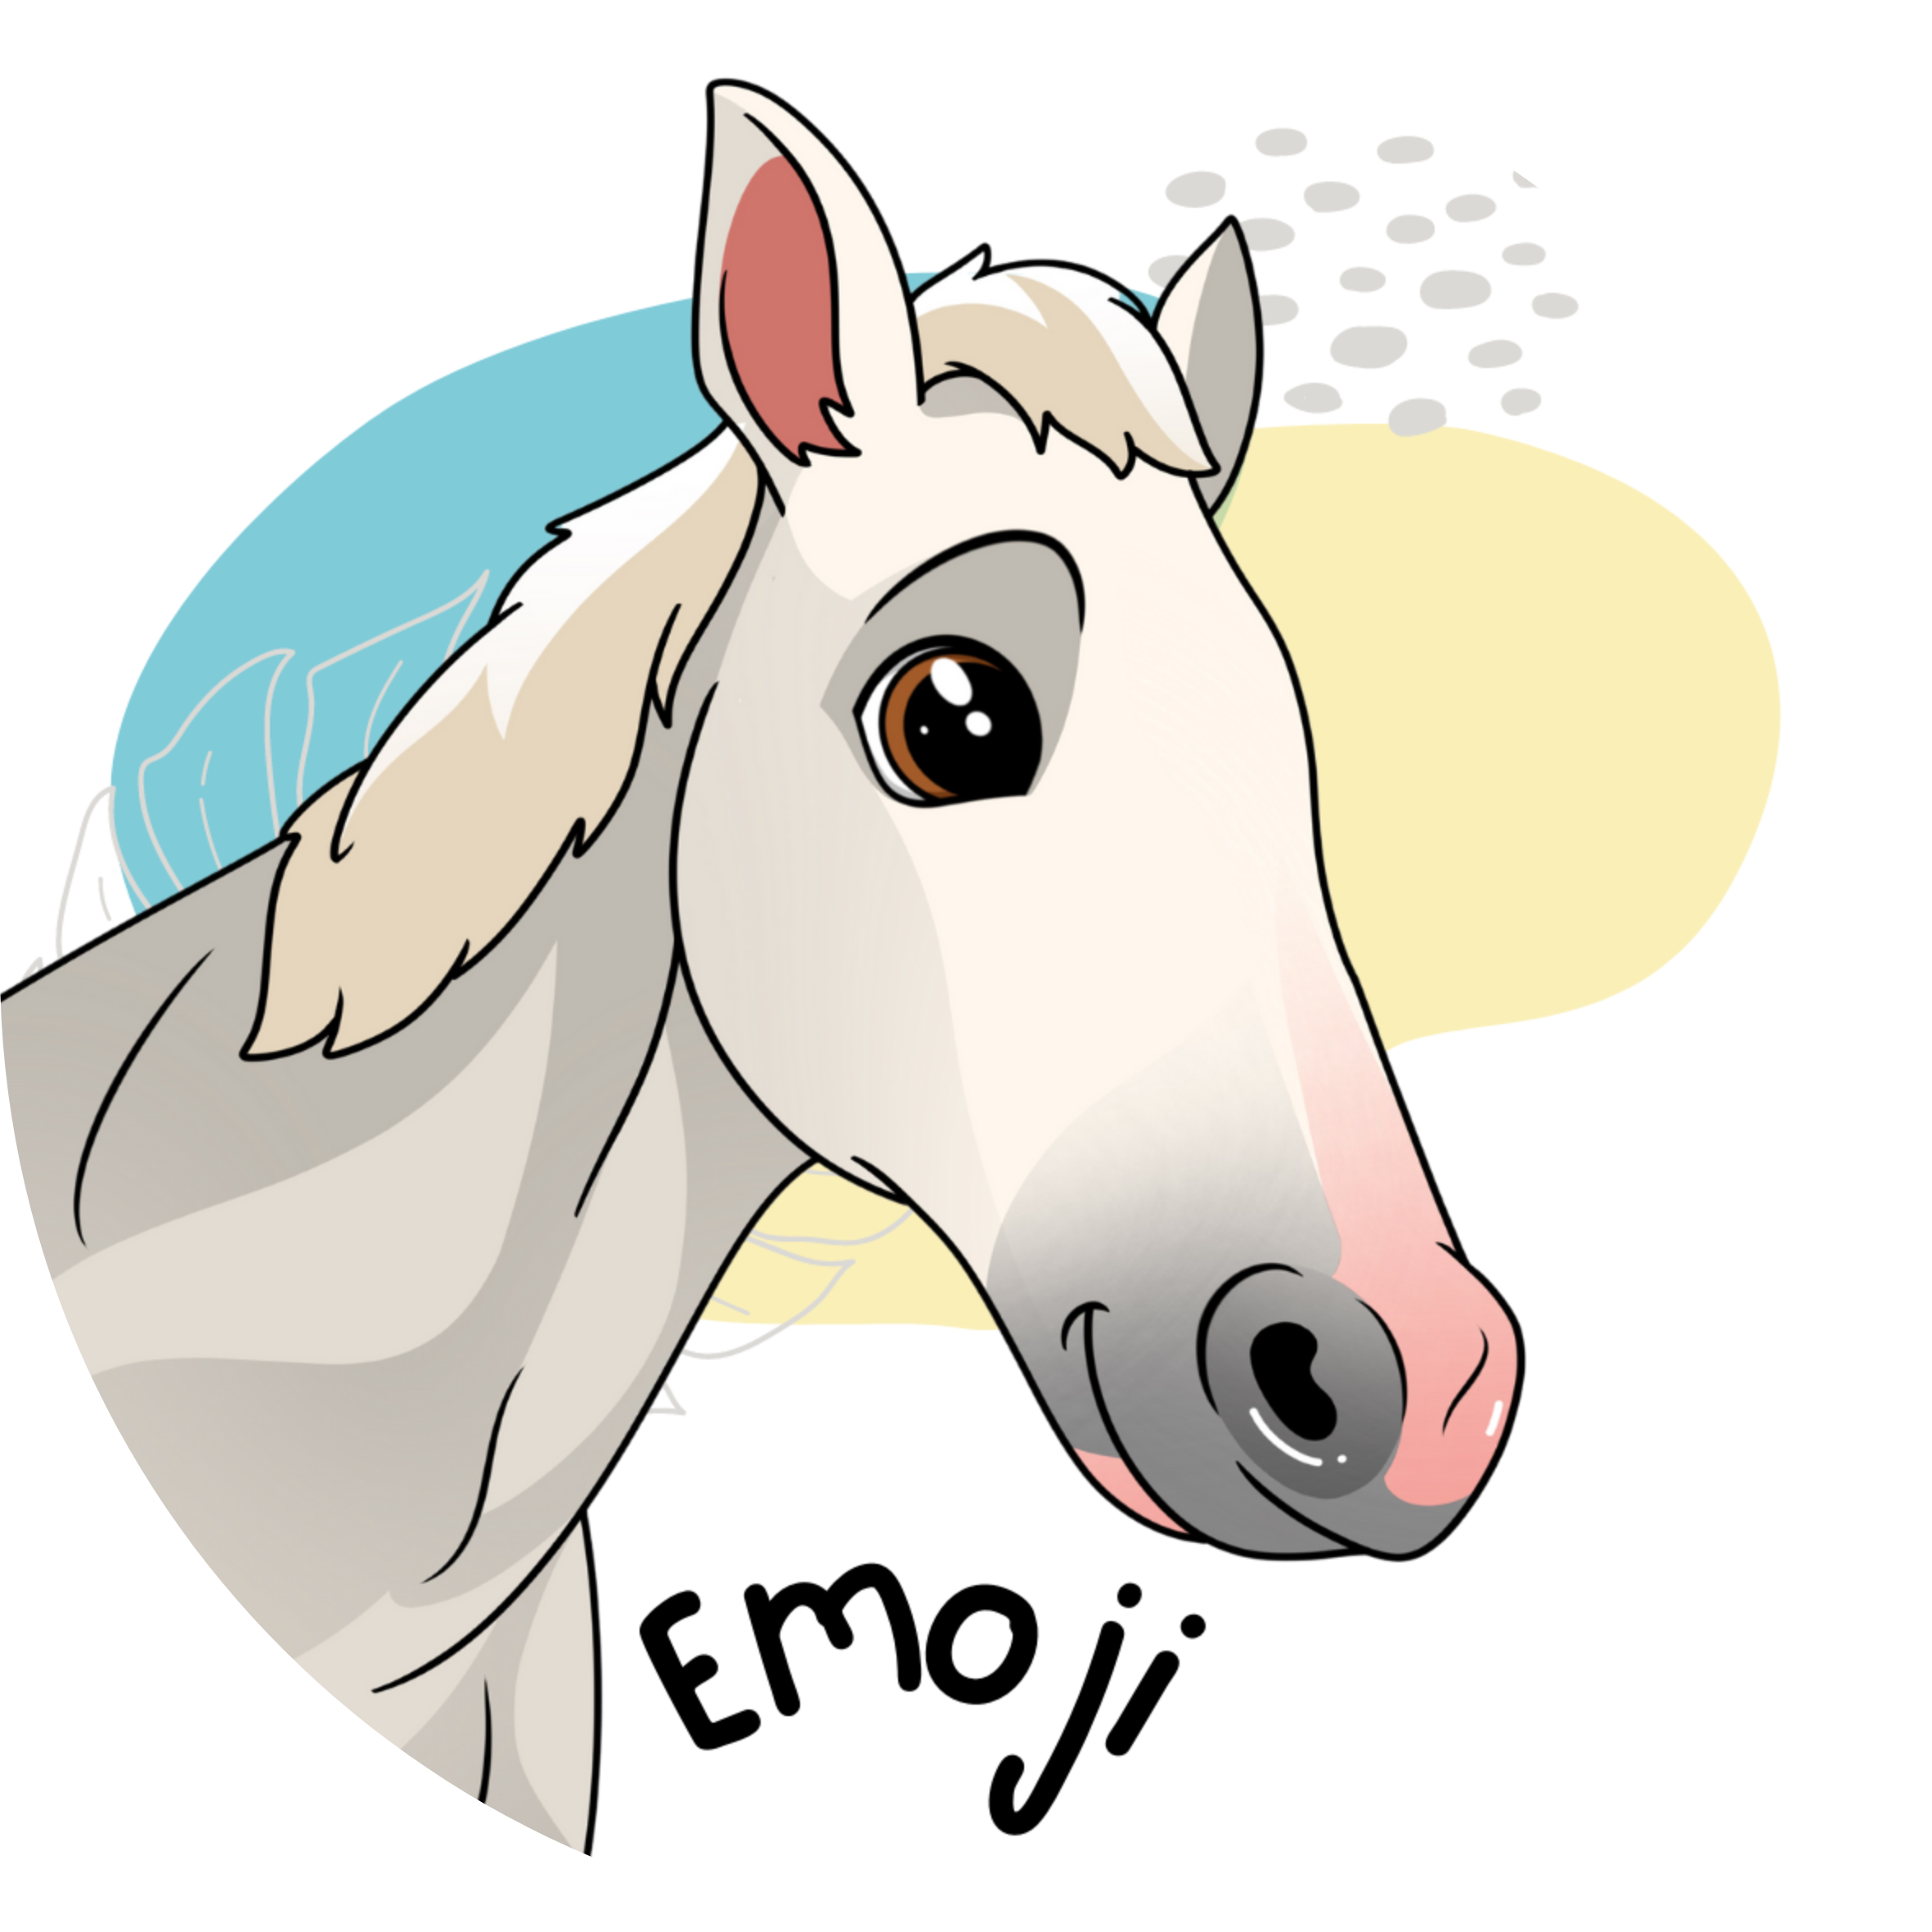 Emoji - Horse sticker .png large.png